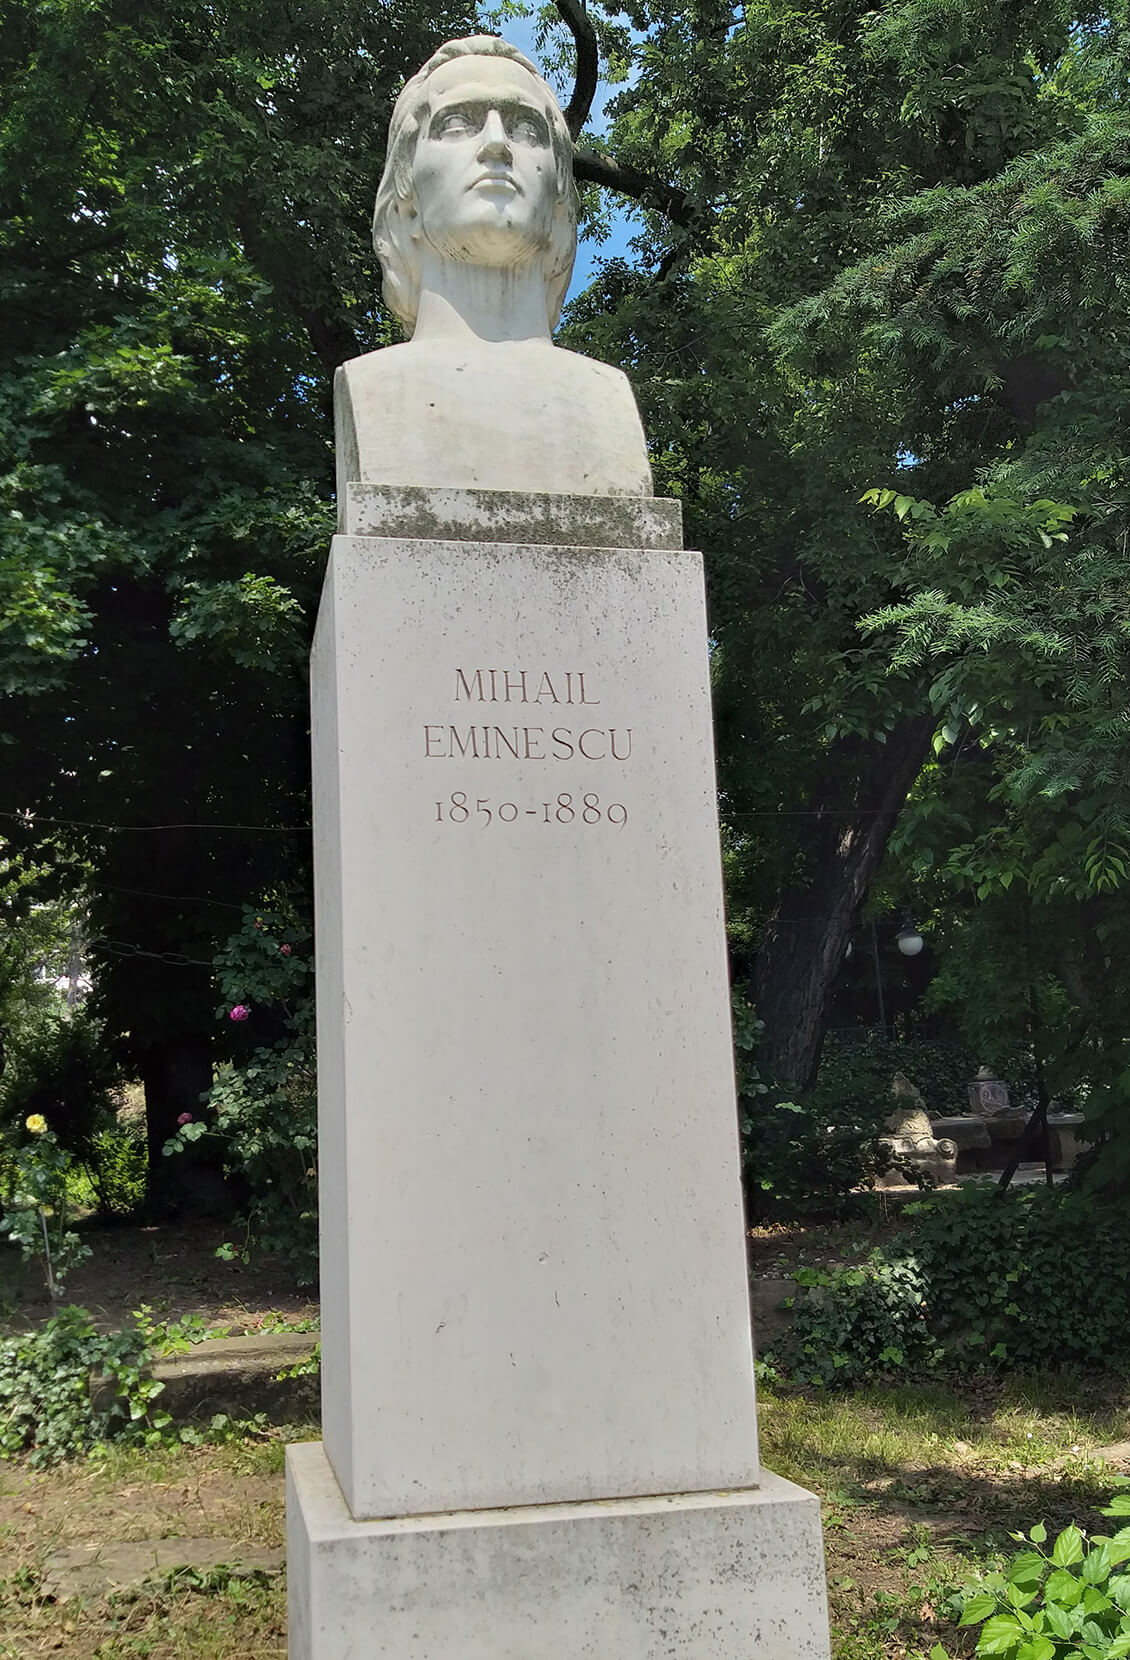 Mihai Eminescu